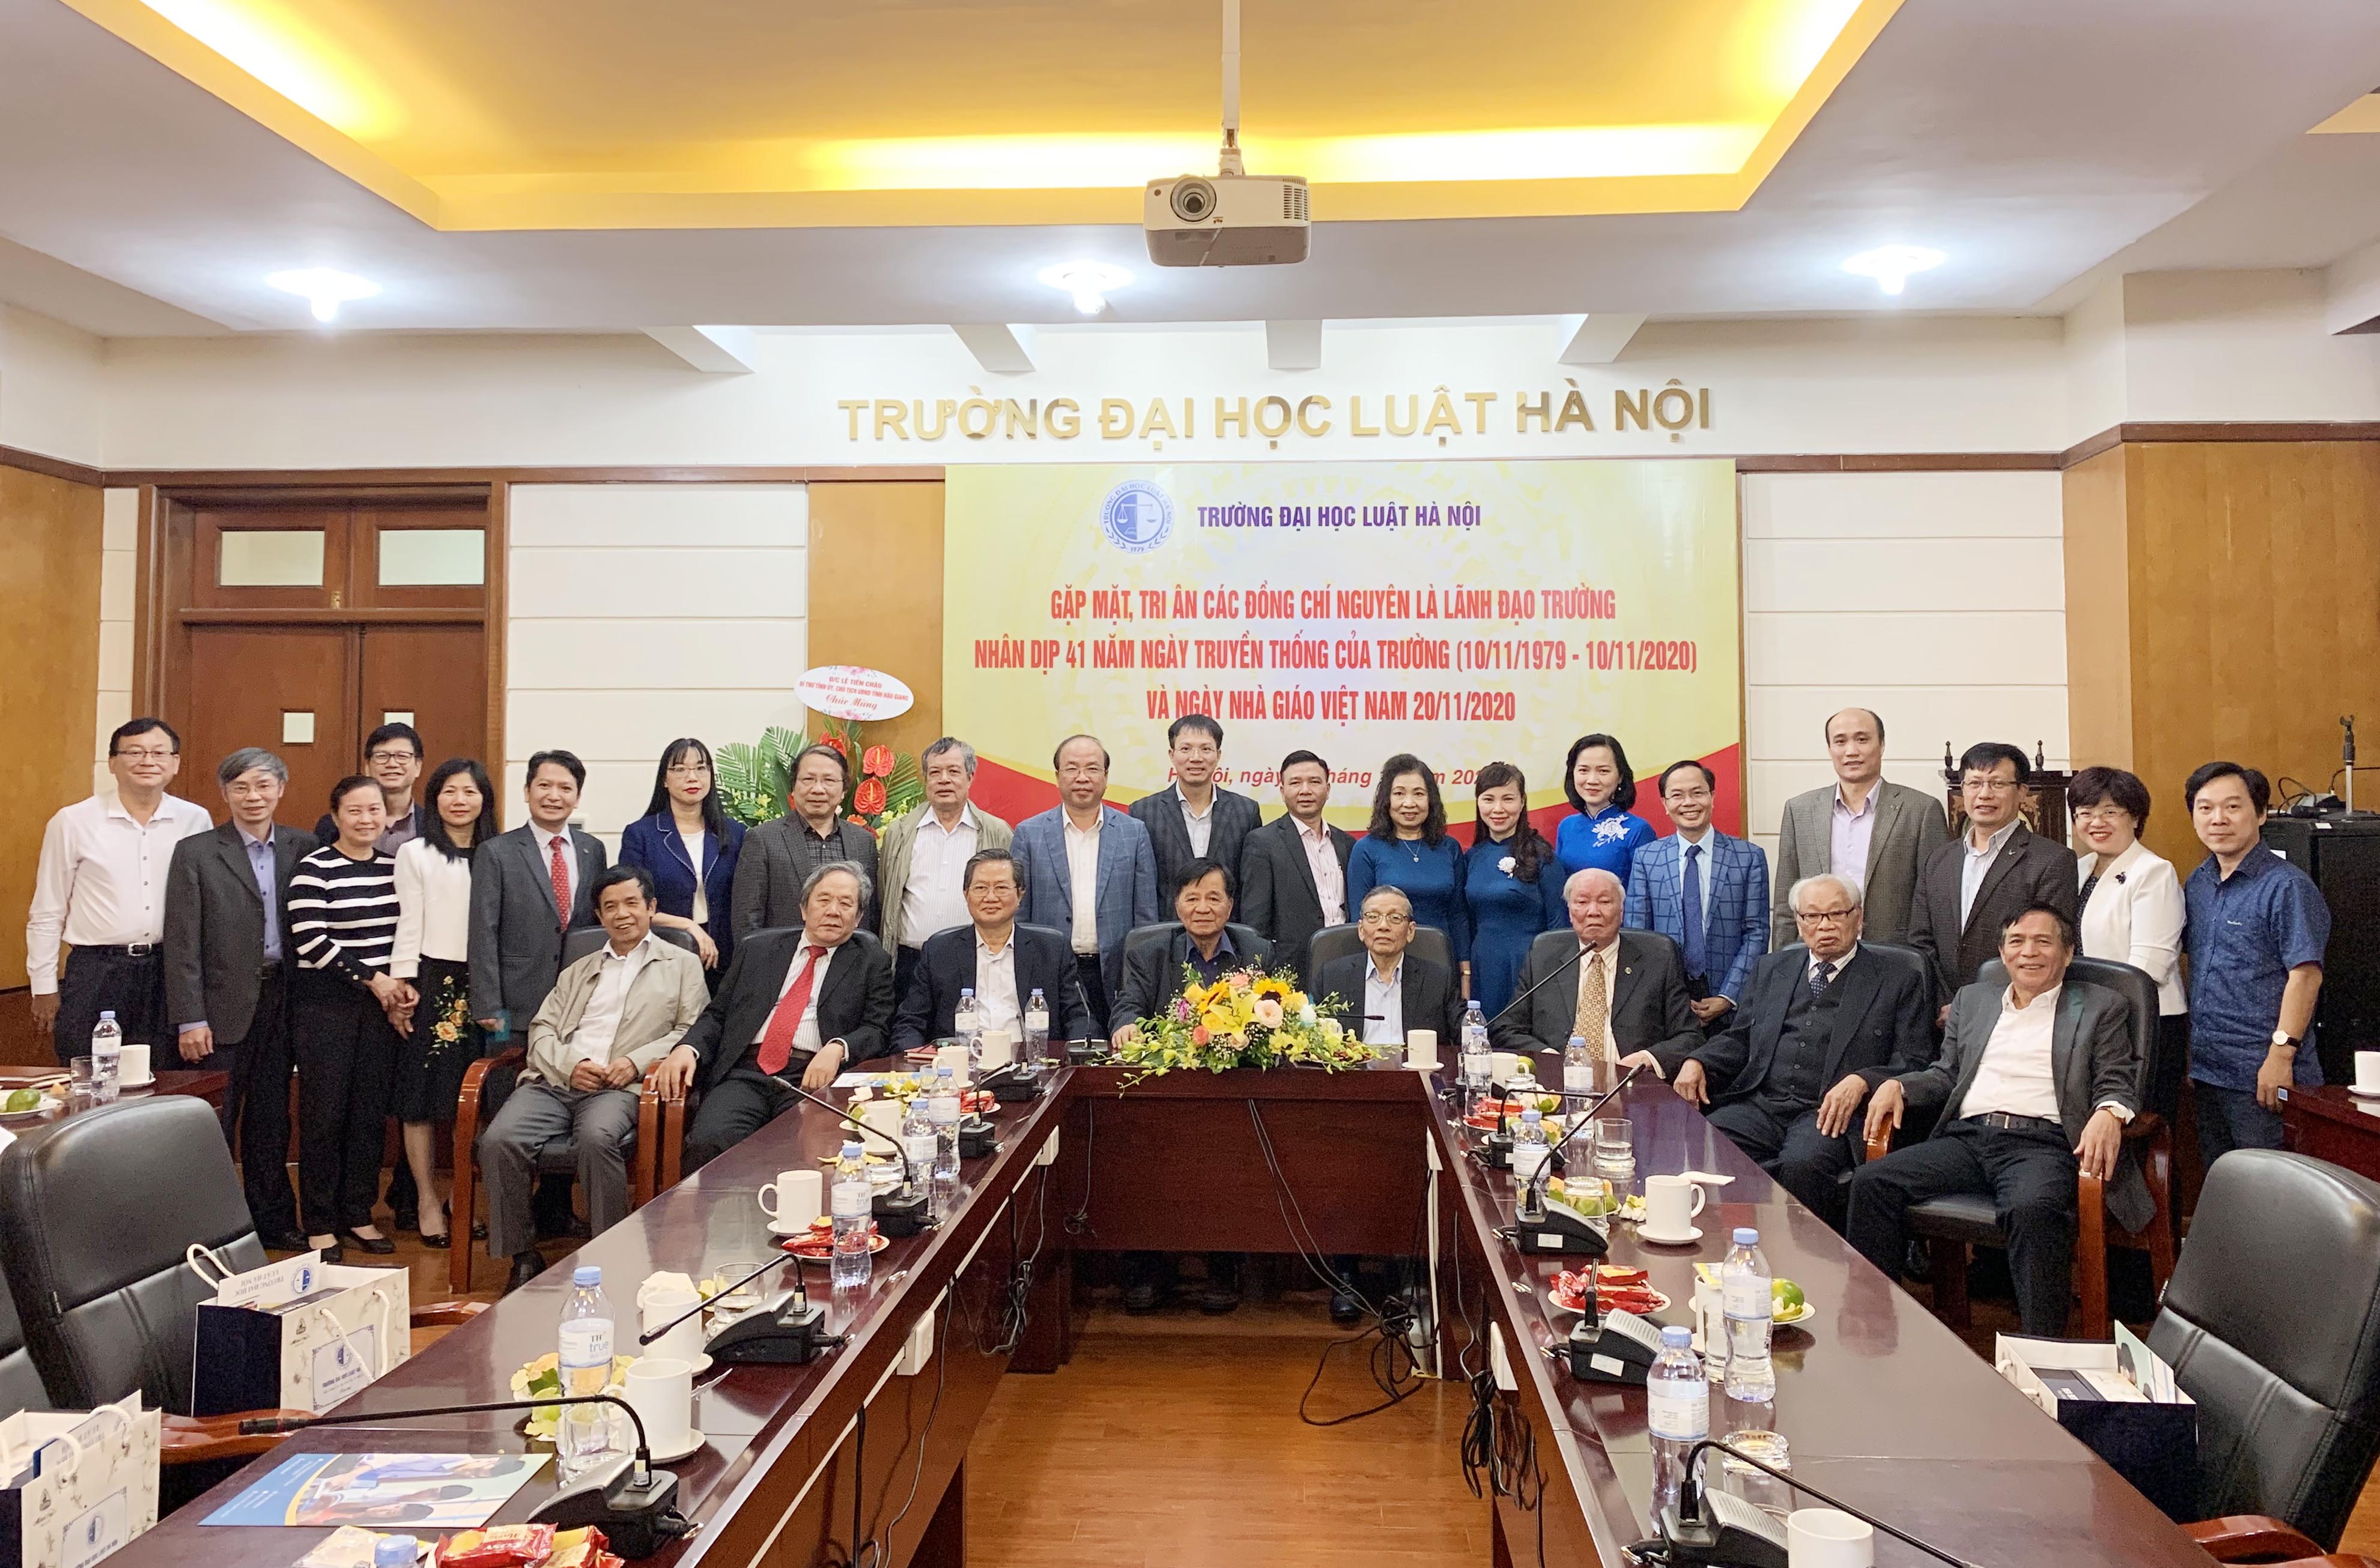 Đại học Luật Hà Nội gặp mặt các đồng chí nguyên lãnh đạo